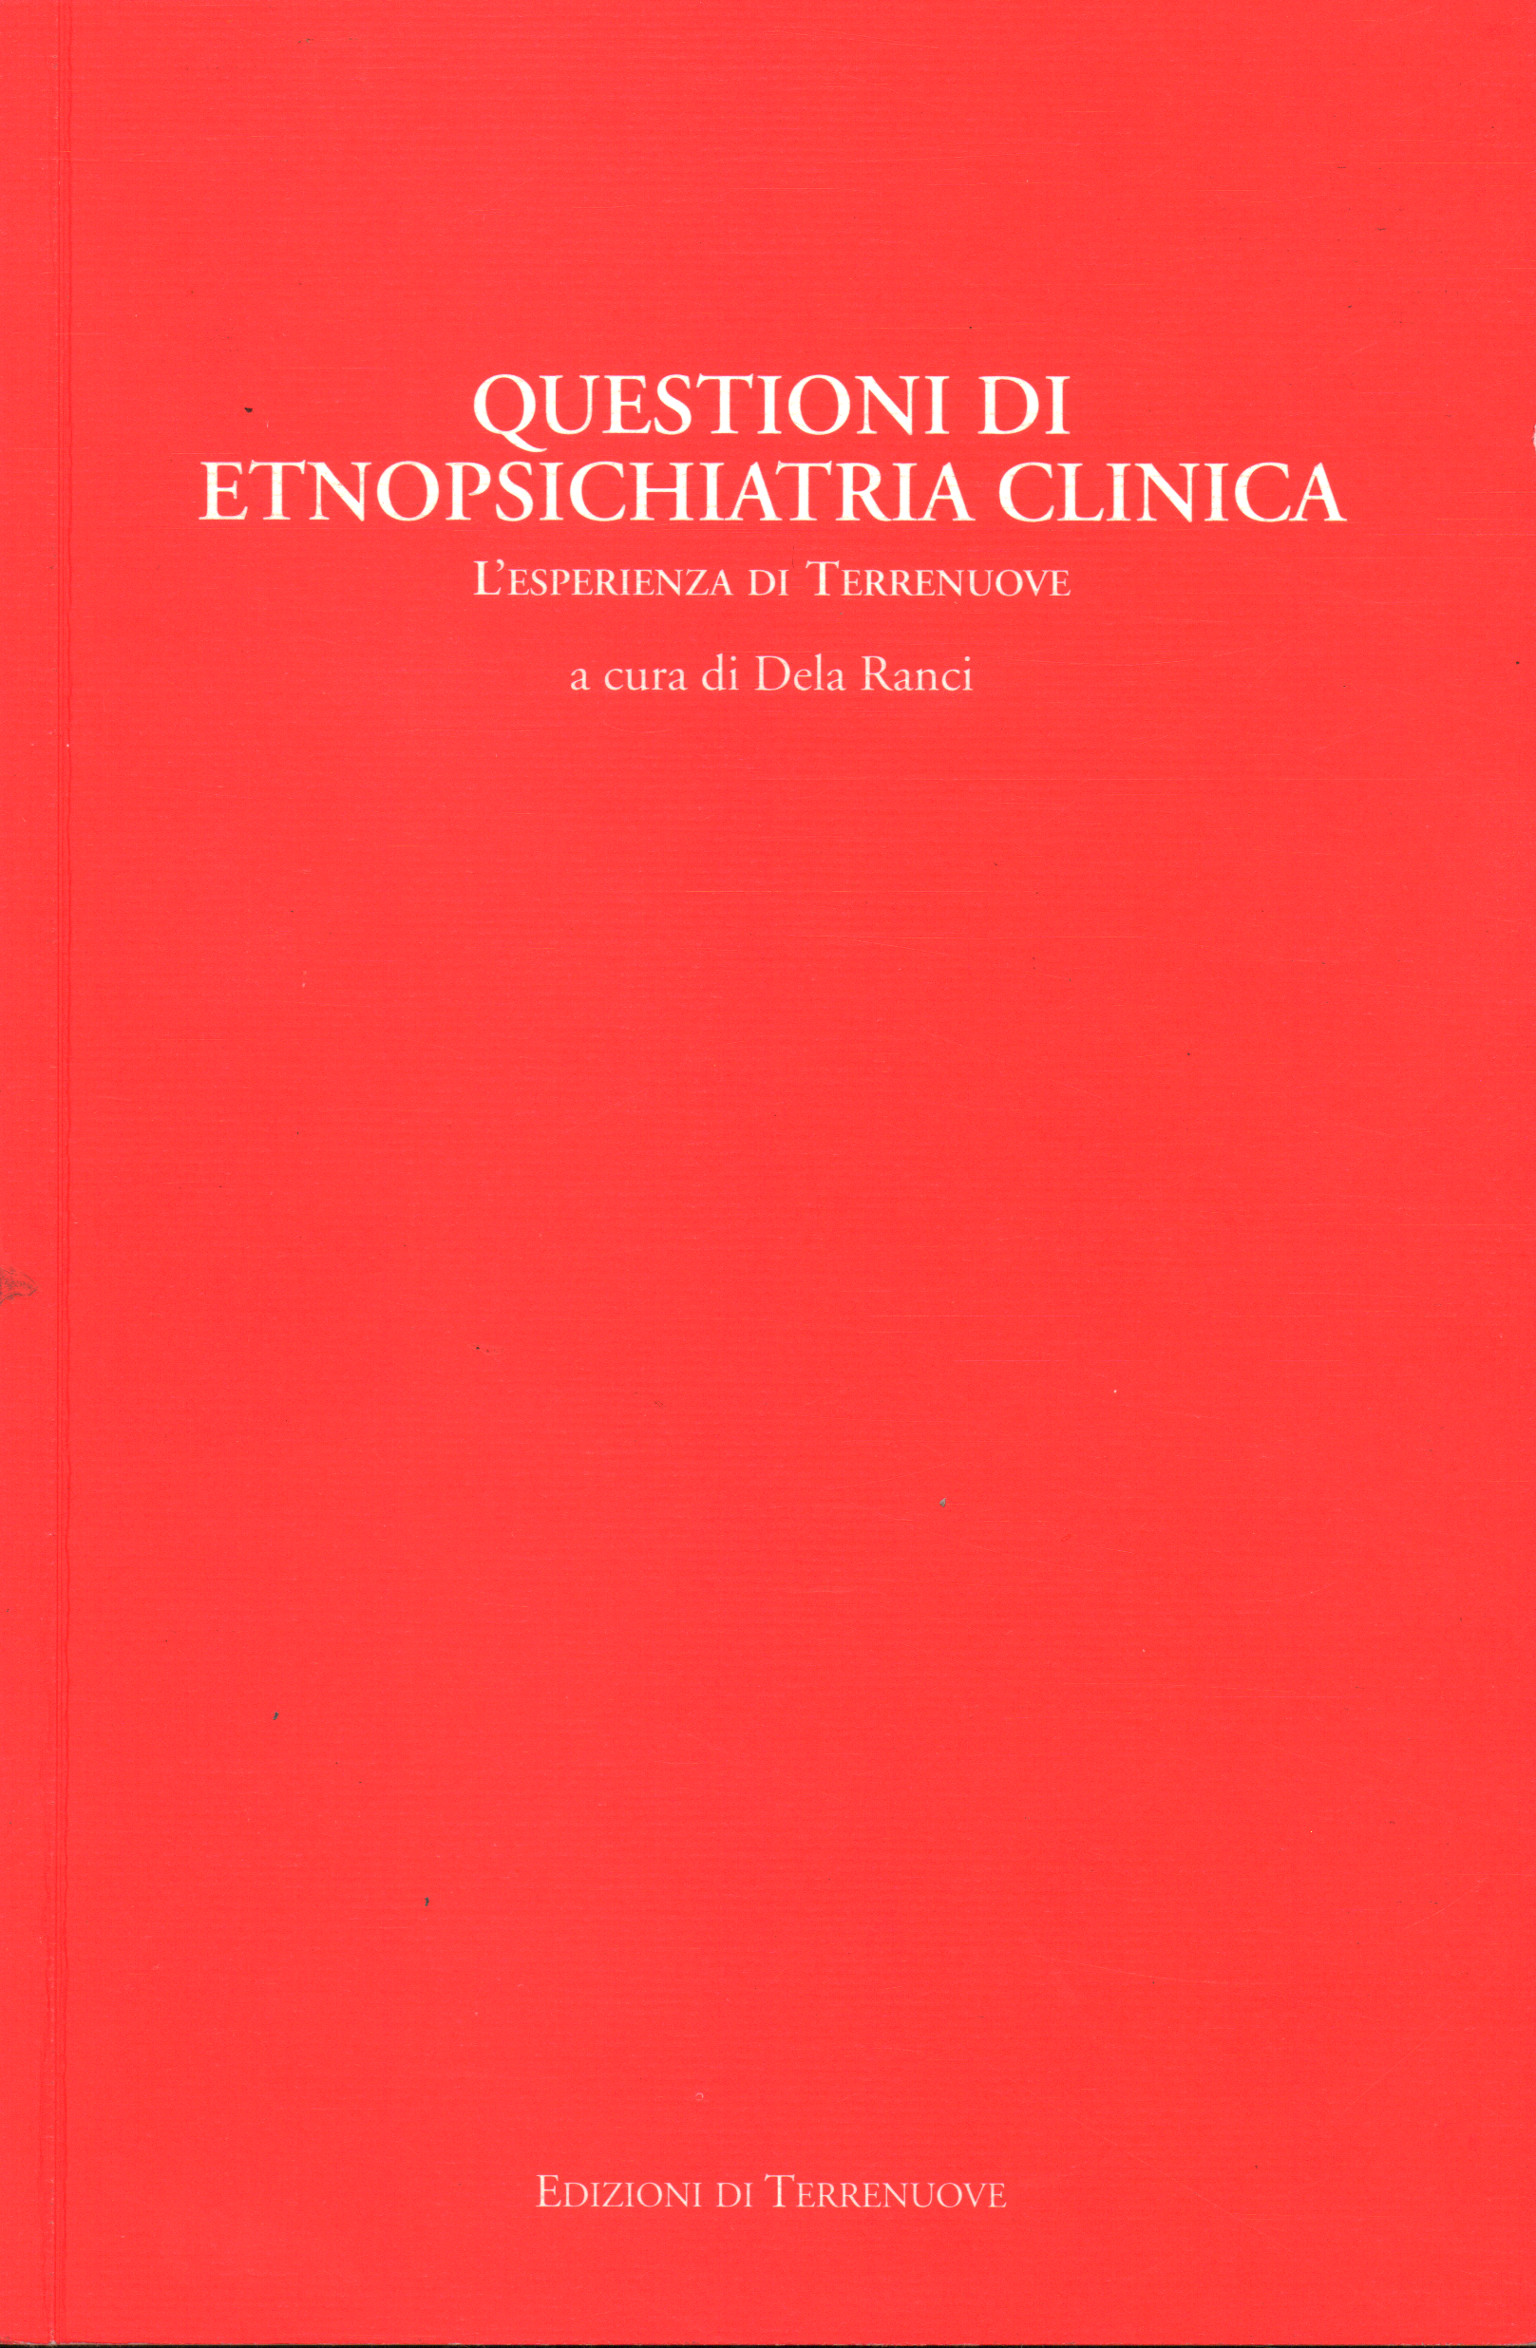 Asuntos de etnopsiquiatría clínica, Dela Ranci